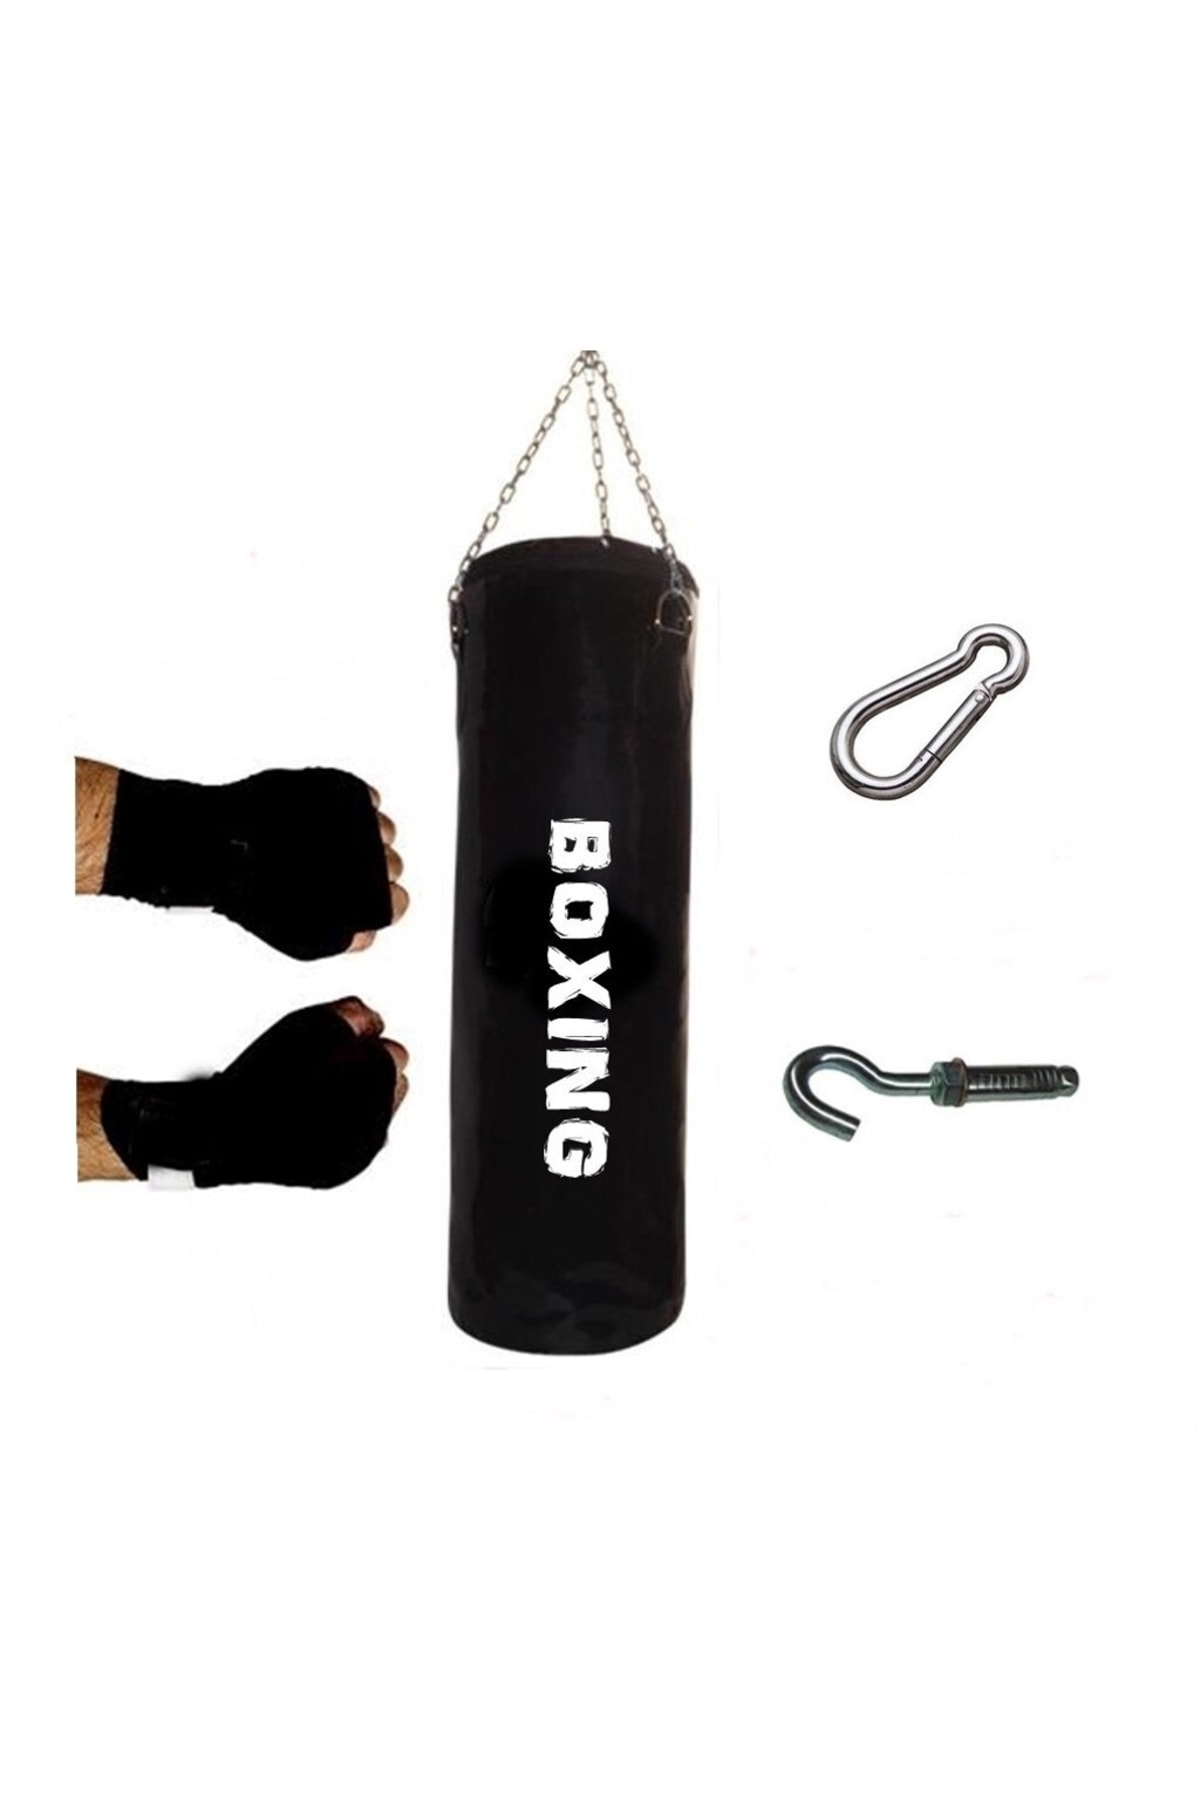 A Boxing - 120x32 Cm Geniş Kum Torbası Boks Bandajı Kargo Bedava Dolu Tavan Apartı Hediyeli Üründür